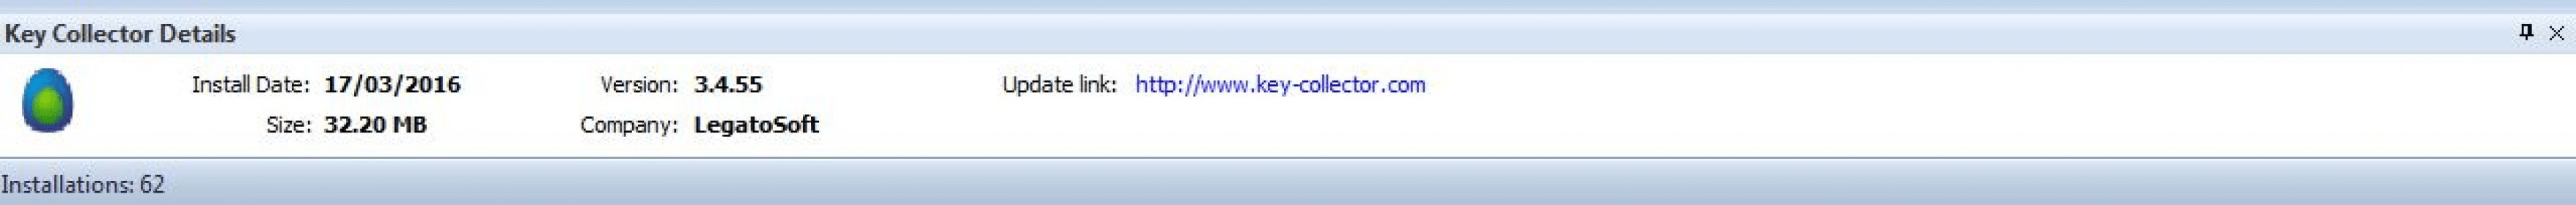 key collector app